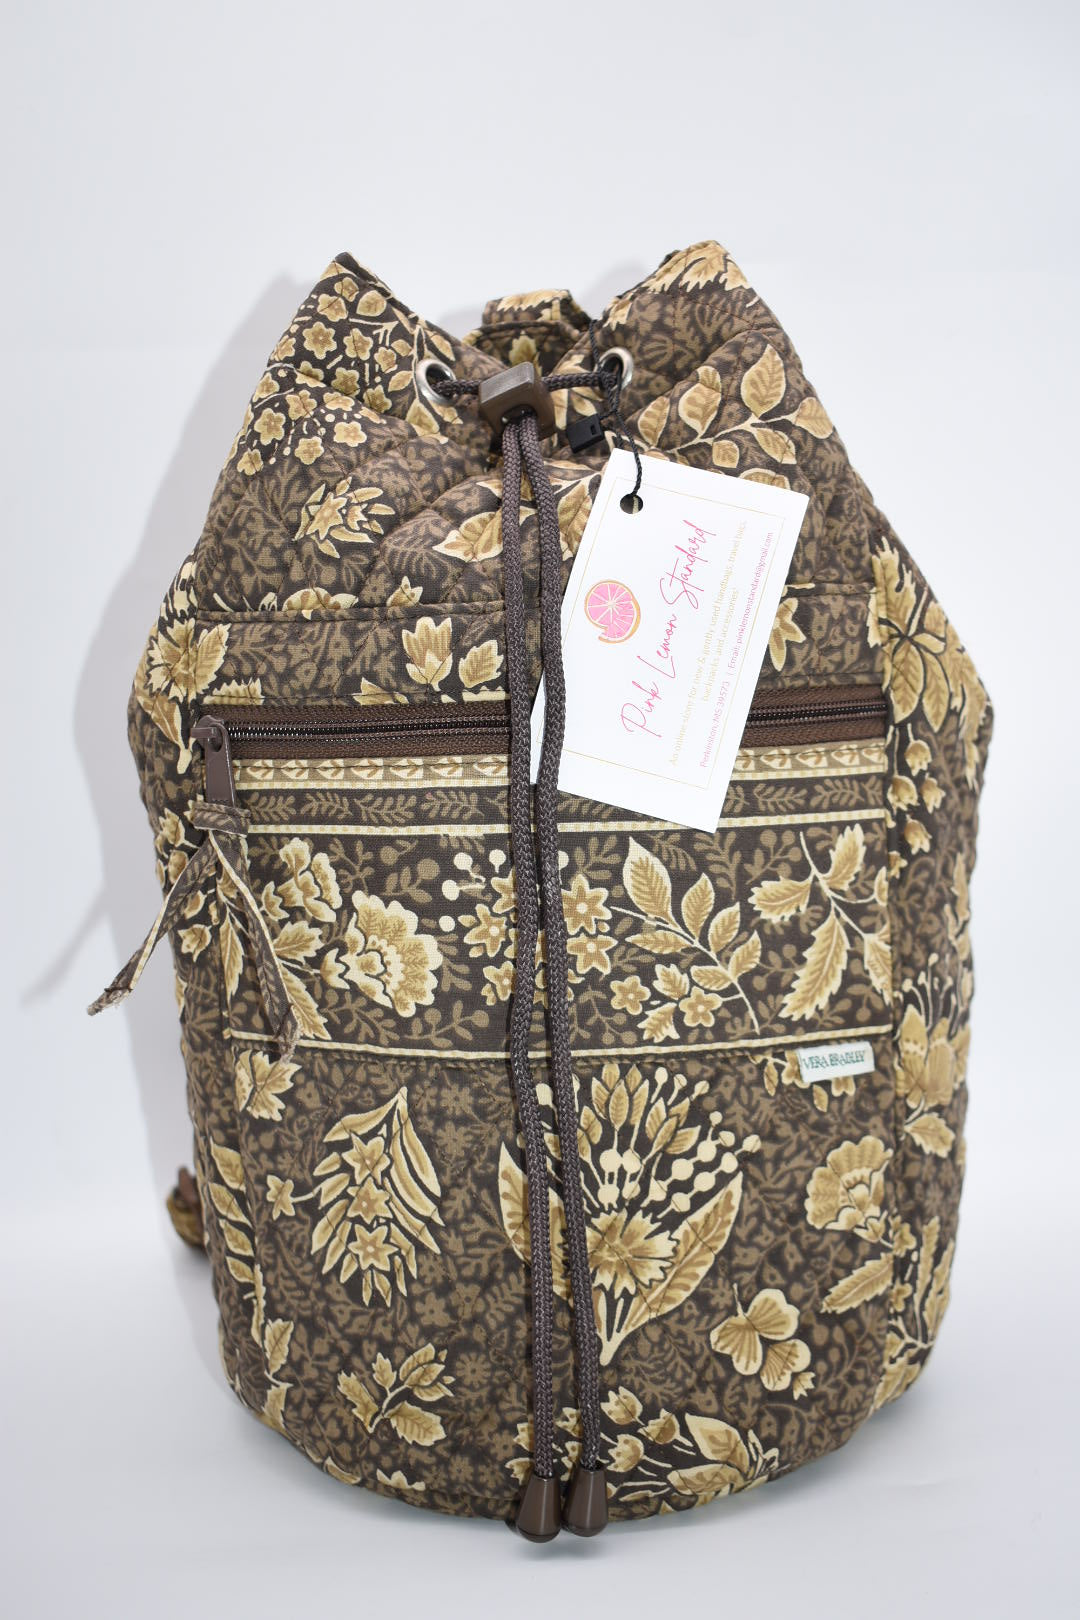 Vintage Vera Bradley Sling Bag in "Java - 1998" Pattern